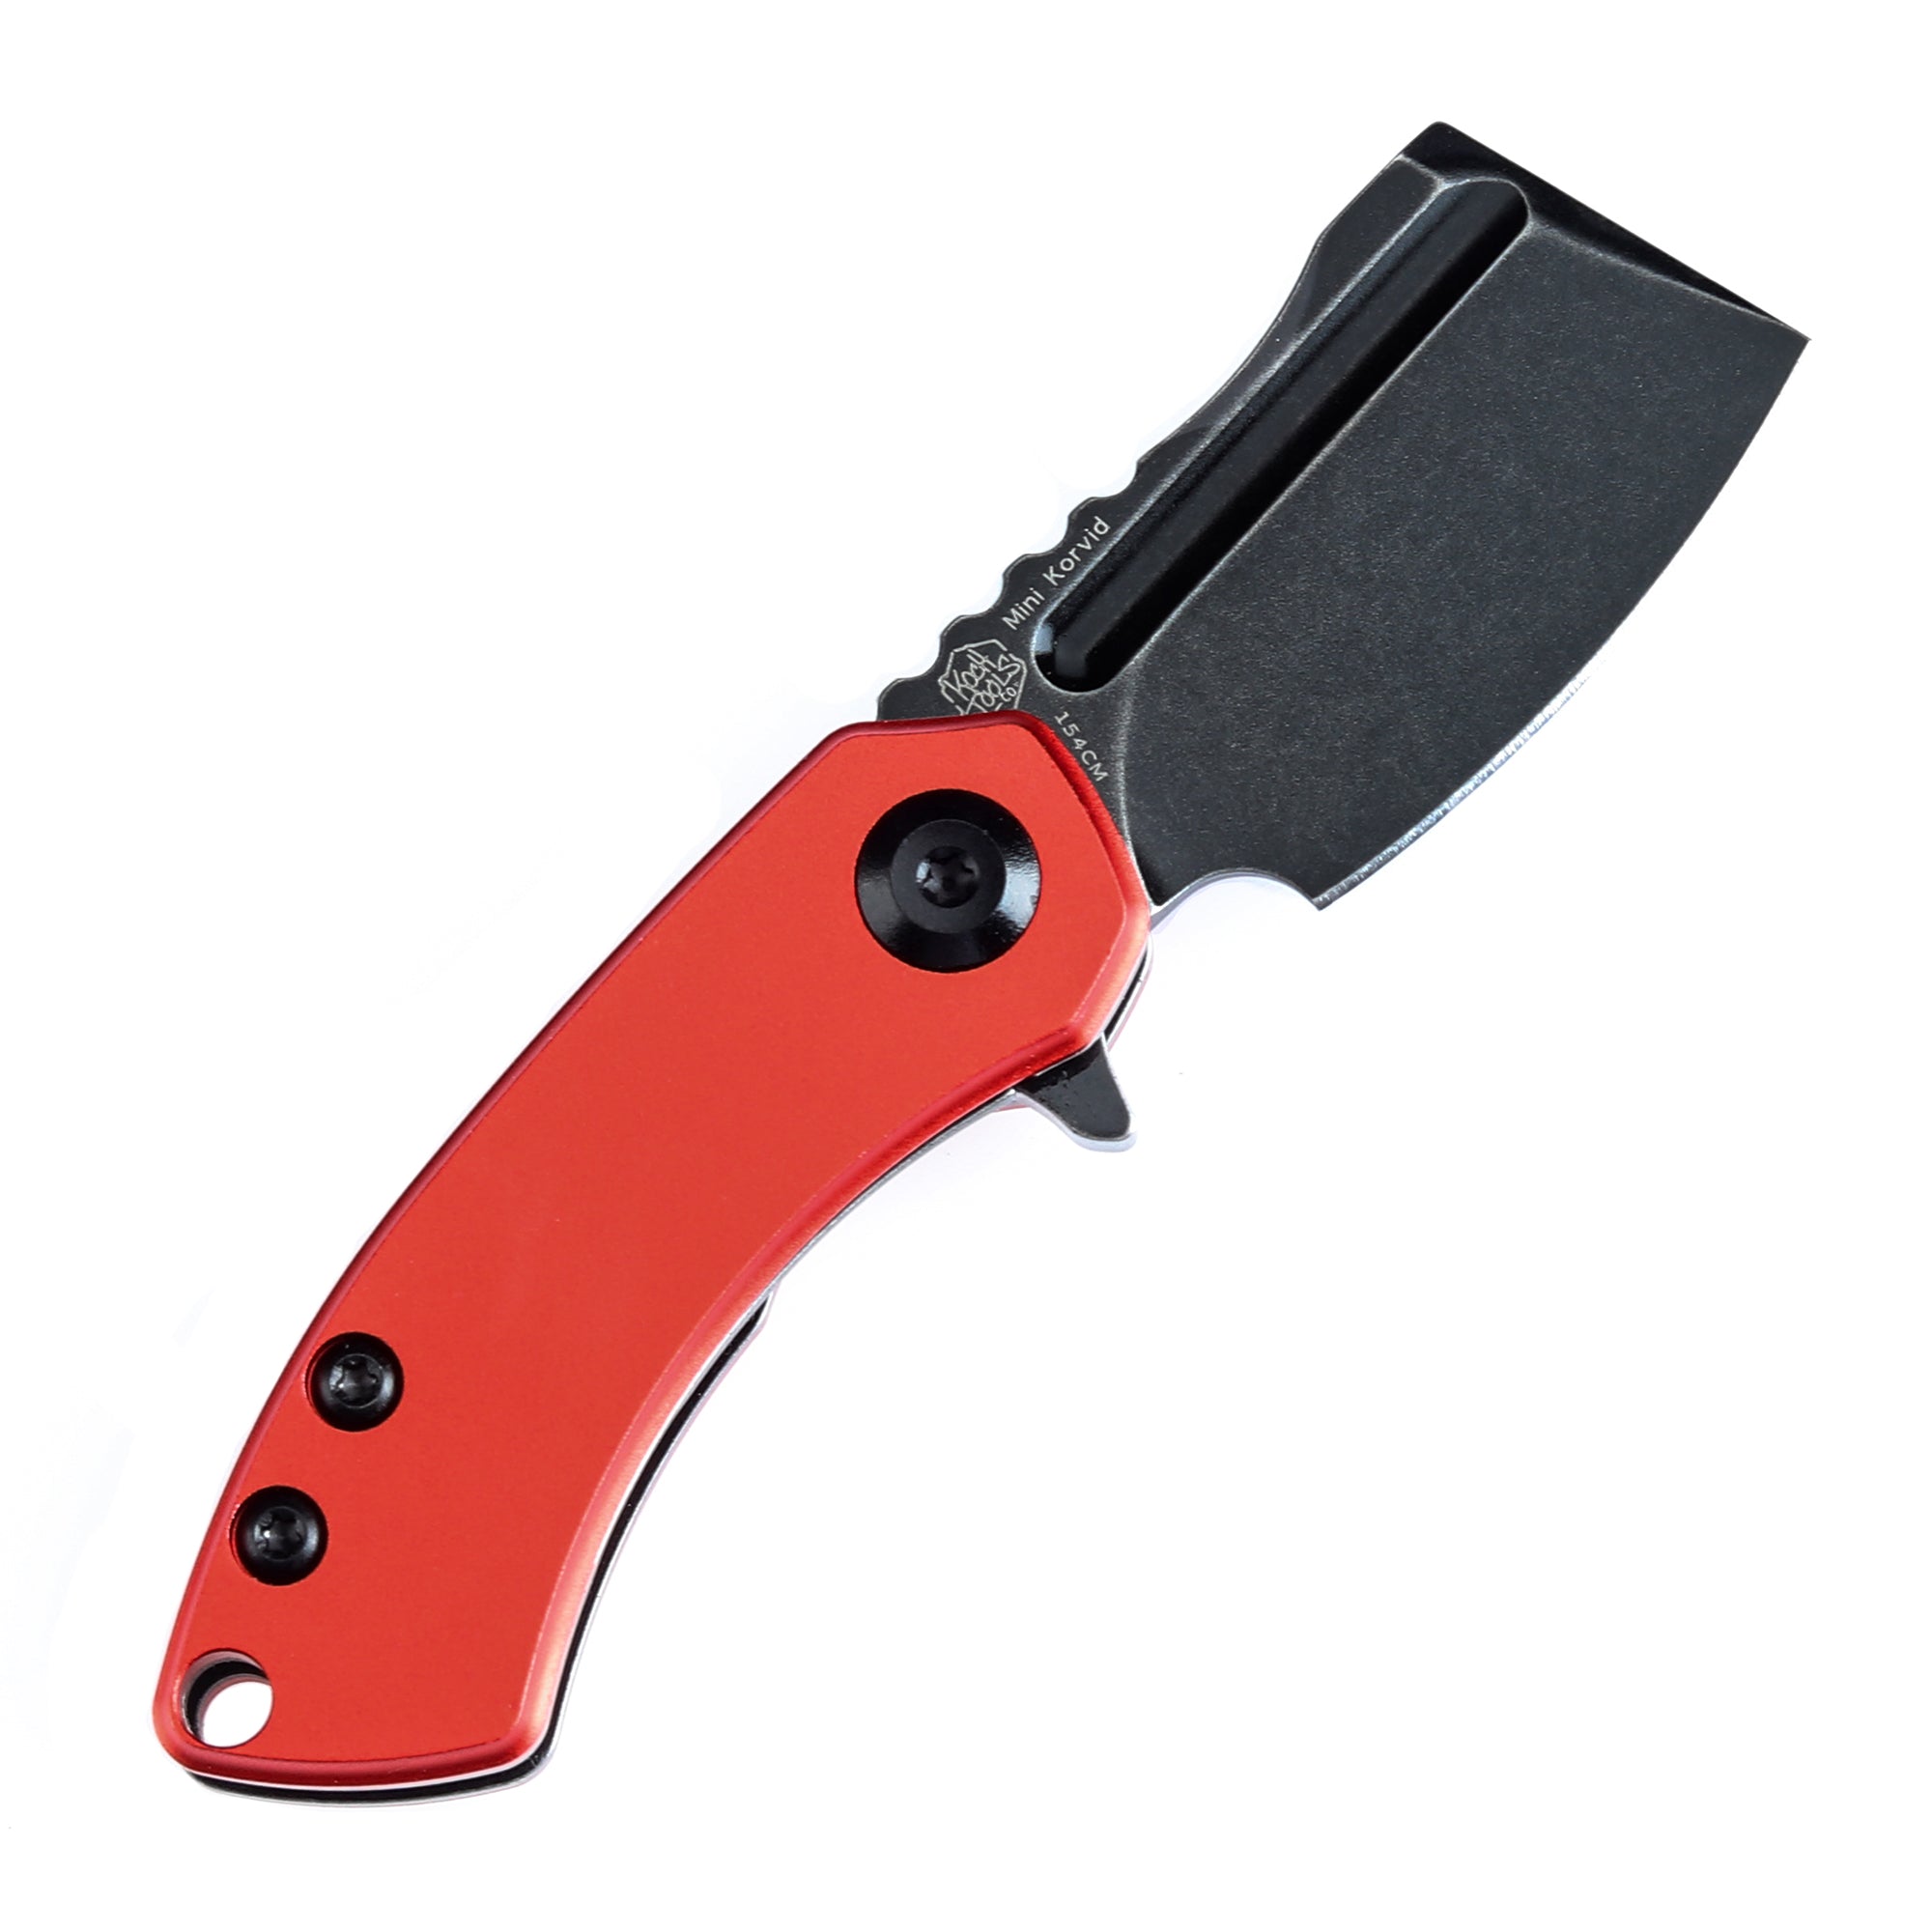 Kansept Mini Korvid Flipper Knife T3030P3 154CM Blade Aluminum Handle